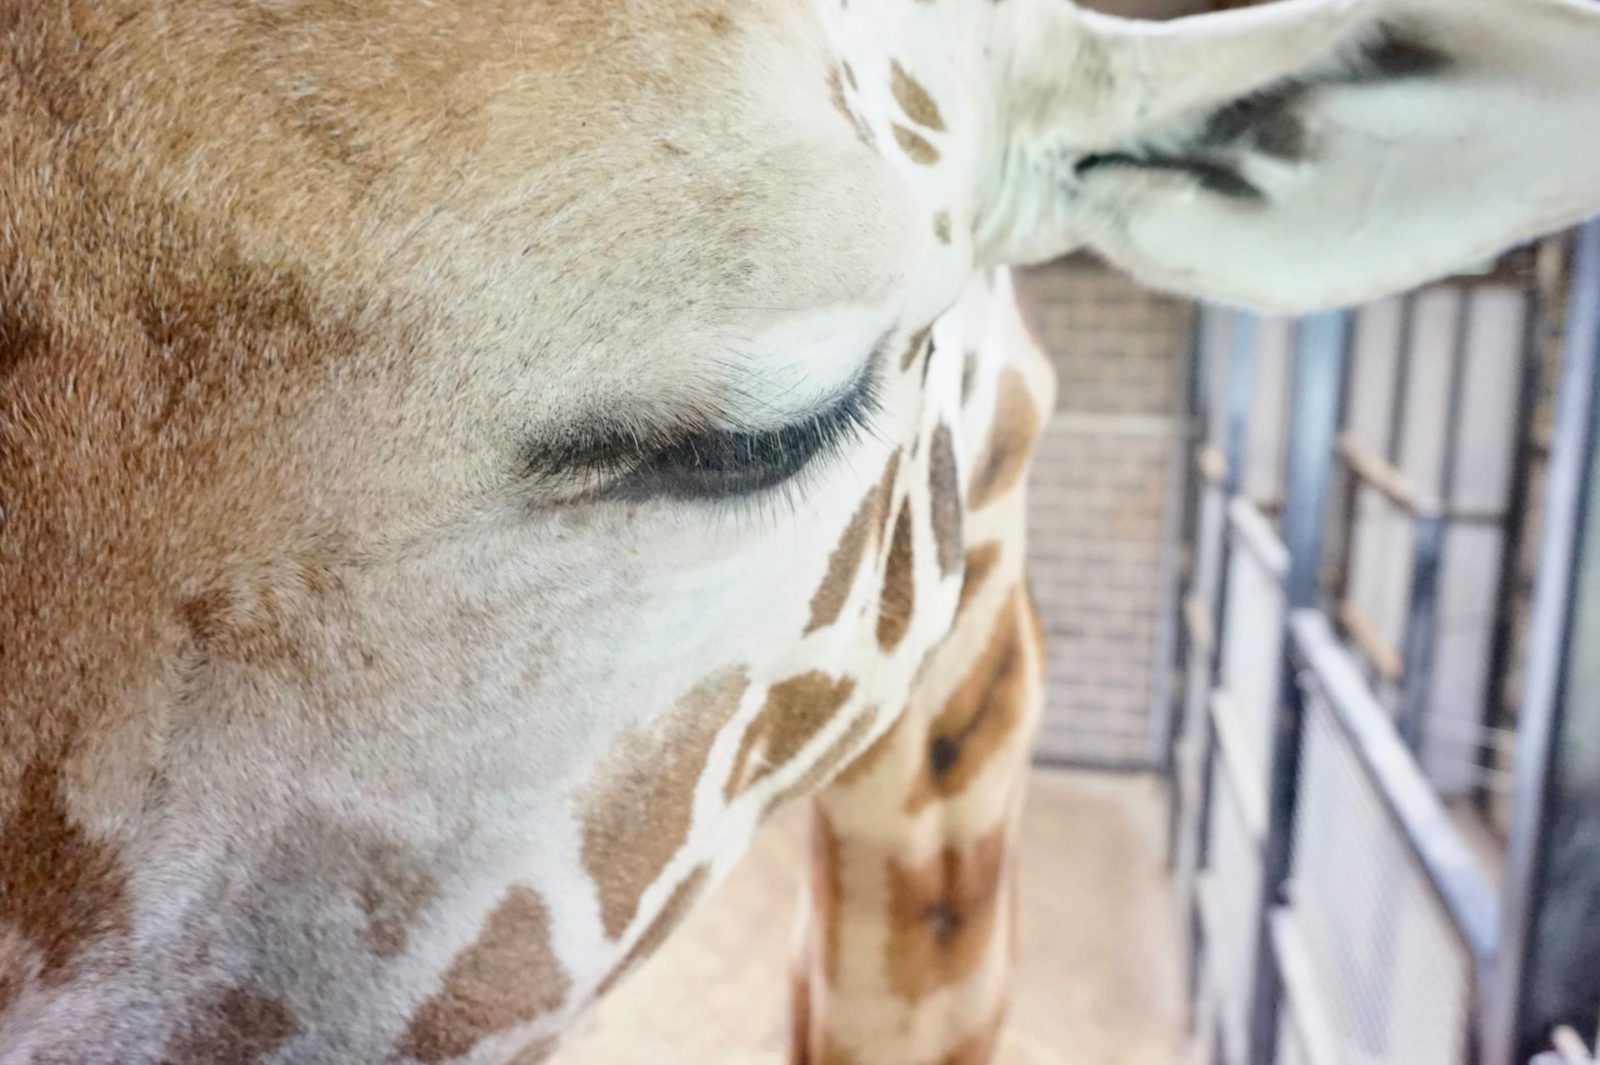 Giraffe-Feeding-Experience-at-Chessington